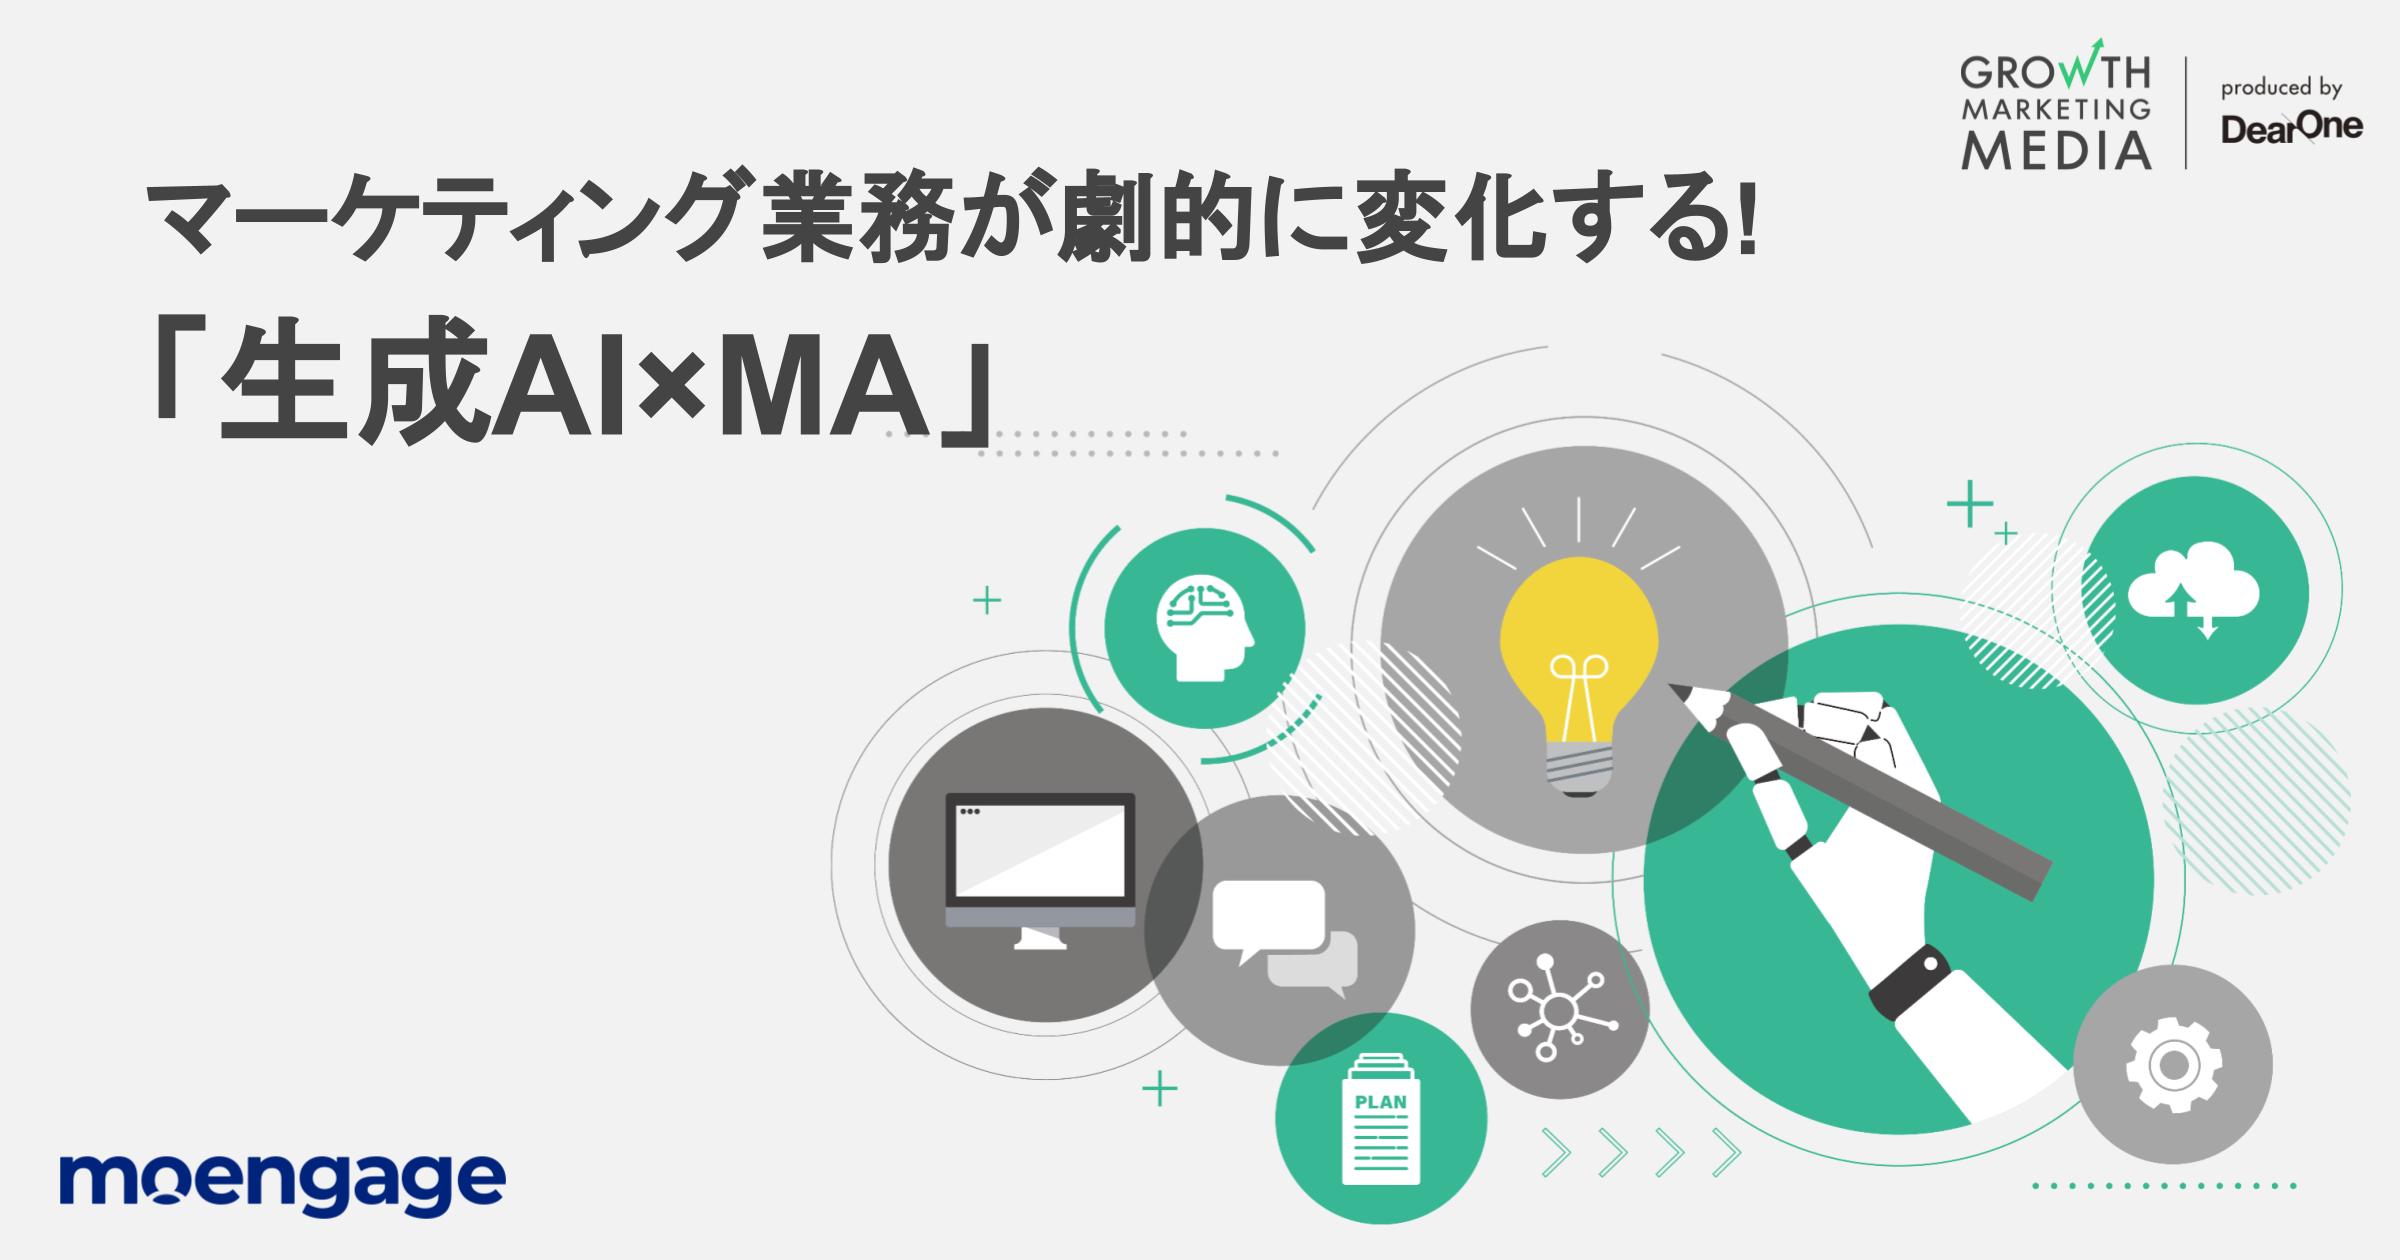 マーケティング業務が劇的に変化する「生成AI×MA」｜グロースマーケティング公式｜Growth Marketing